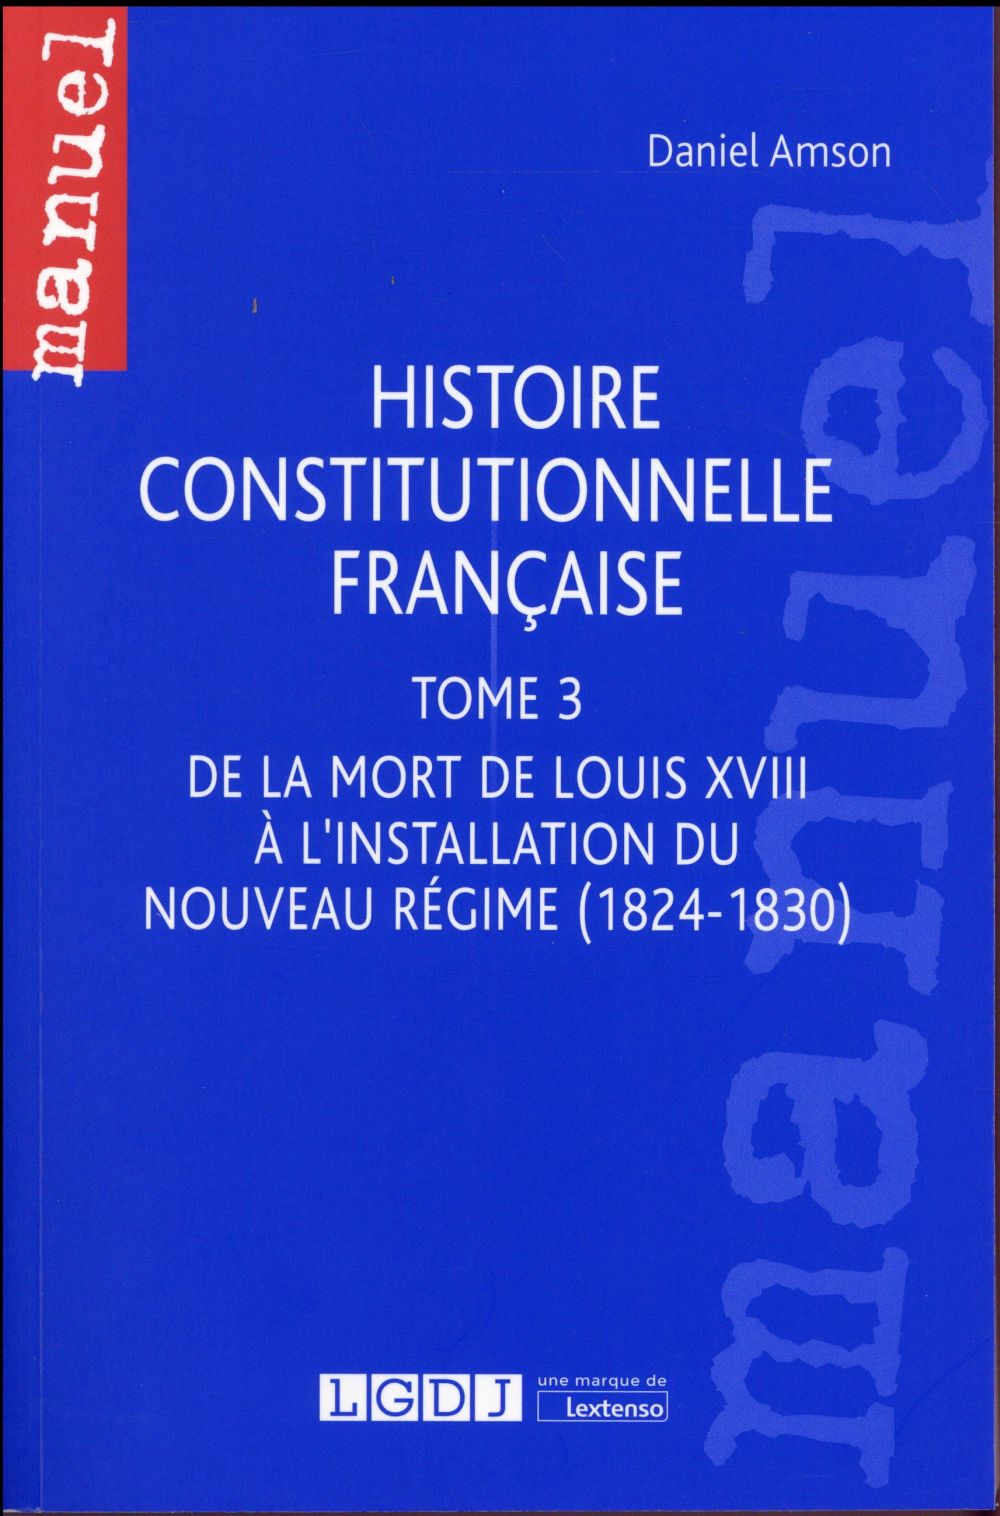 HISTOIRE CONSTITUTIONNELLE FRANCAISE - DE LA MORT DE LOUIS XVIII A L'INSTALLATION DU NOUVEAU REGIME